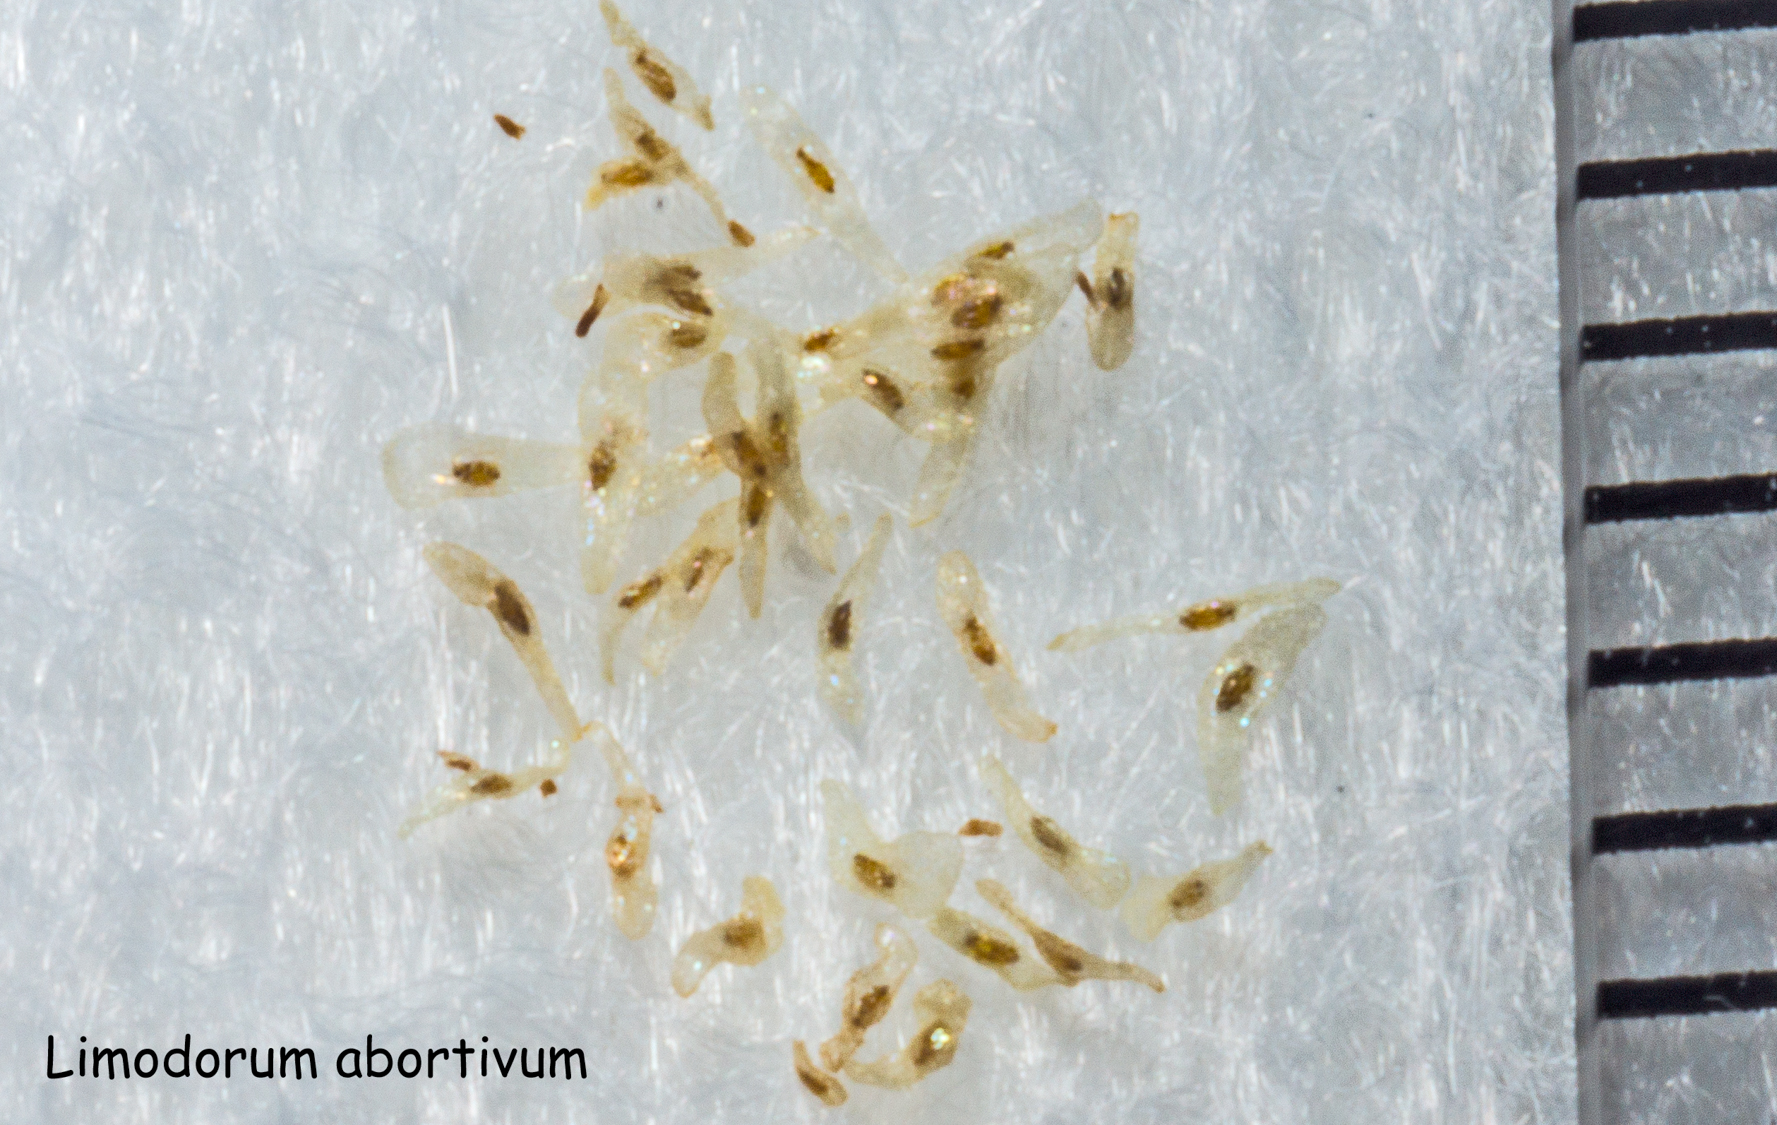 Graine de Limodorum abortivum (Orchidacaea). Une graduation mesure 1mm